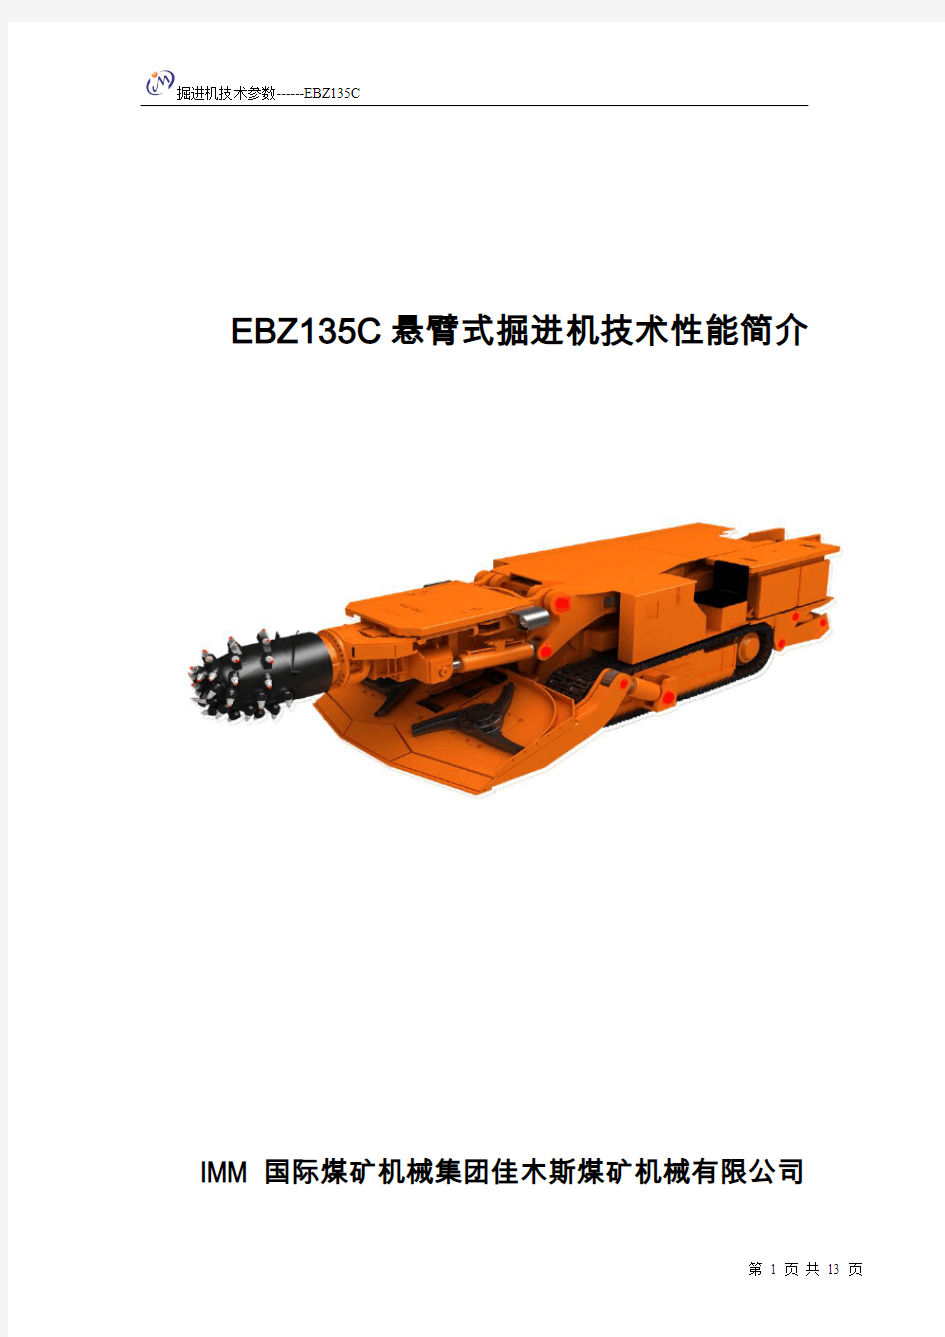 EBZ135掘进机技术参数、性能简介及配置 2010-07-6